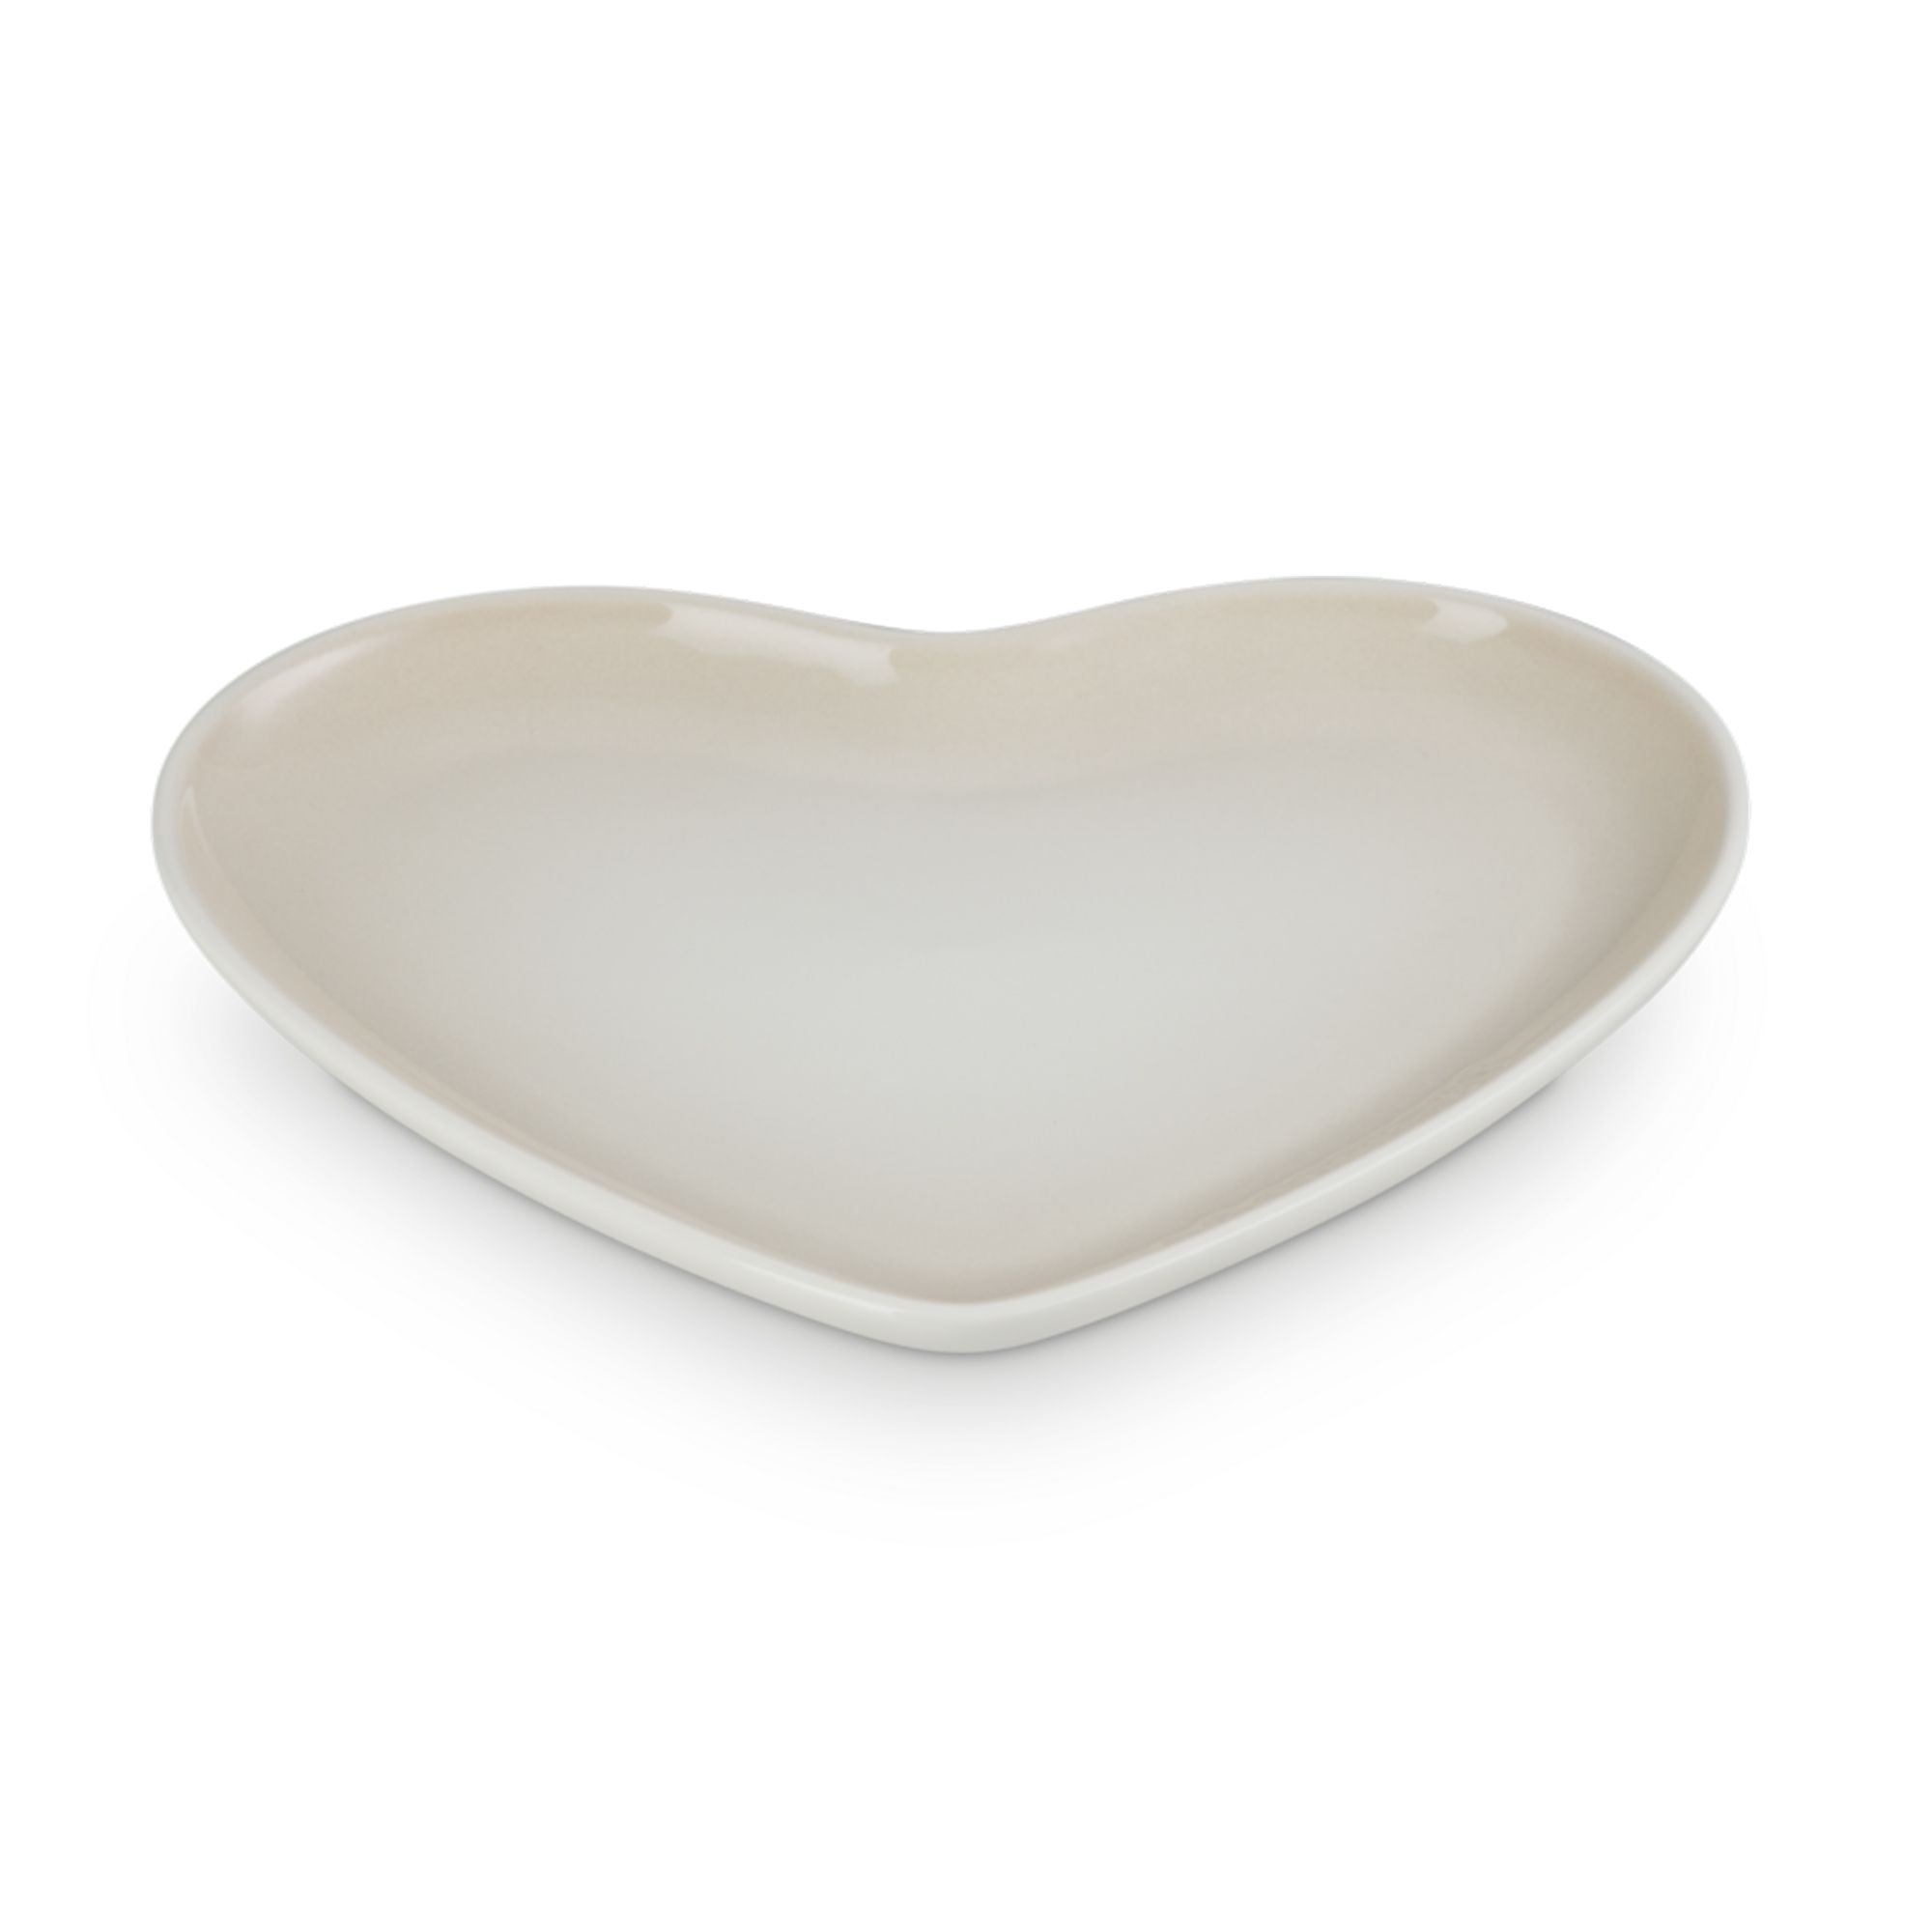 Le Creuset - Heart Plate 23 cm